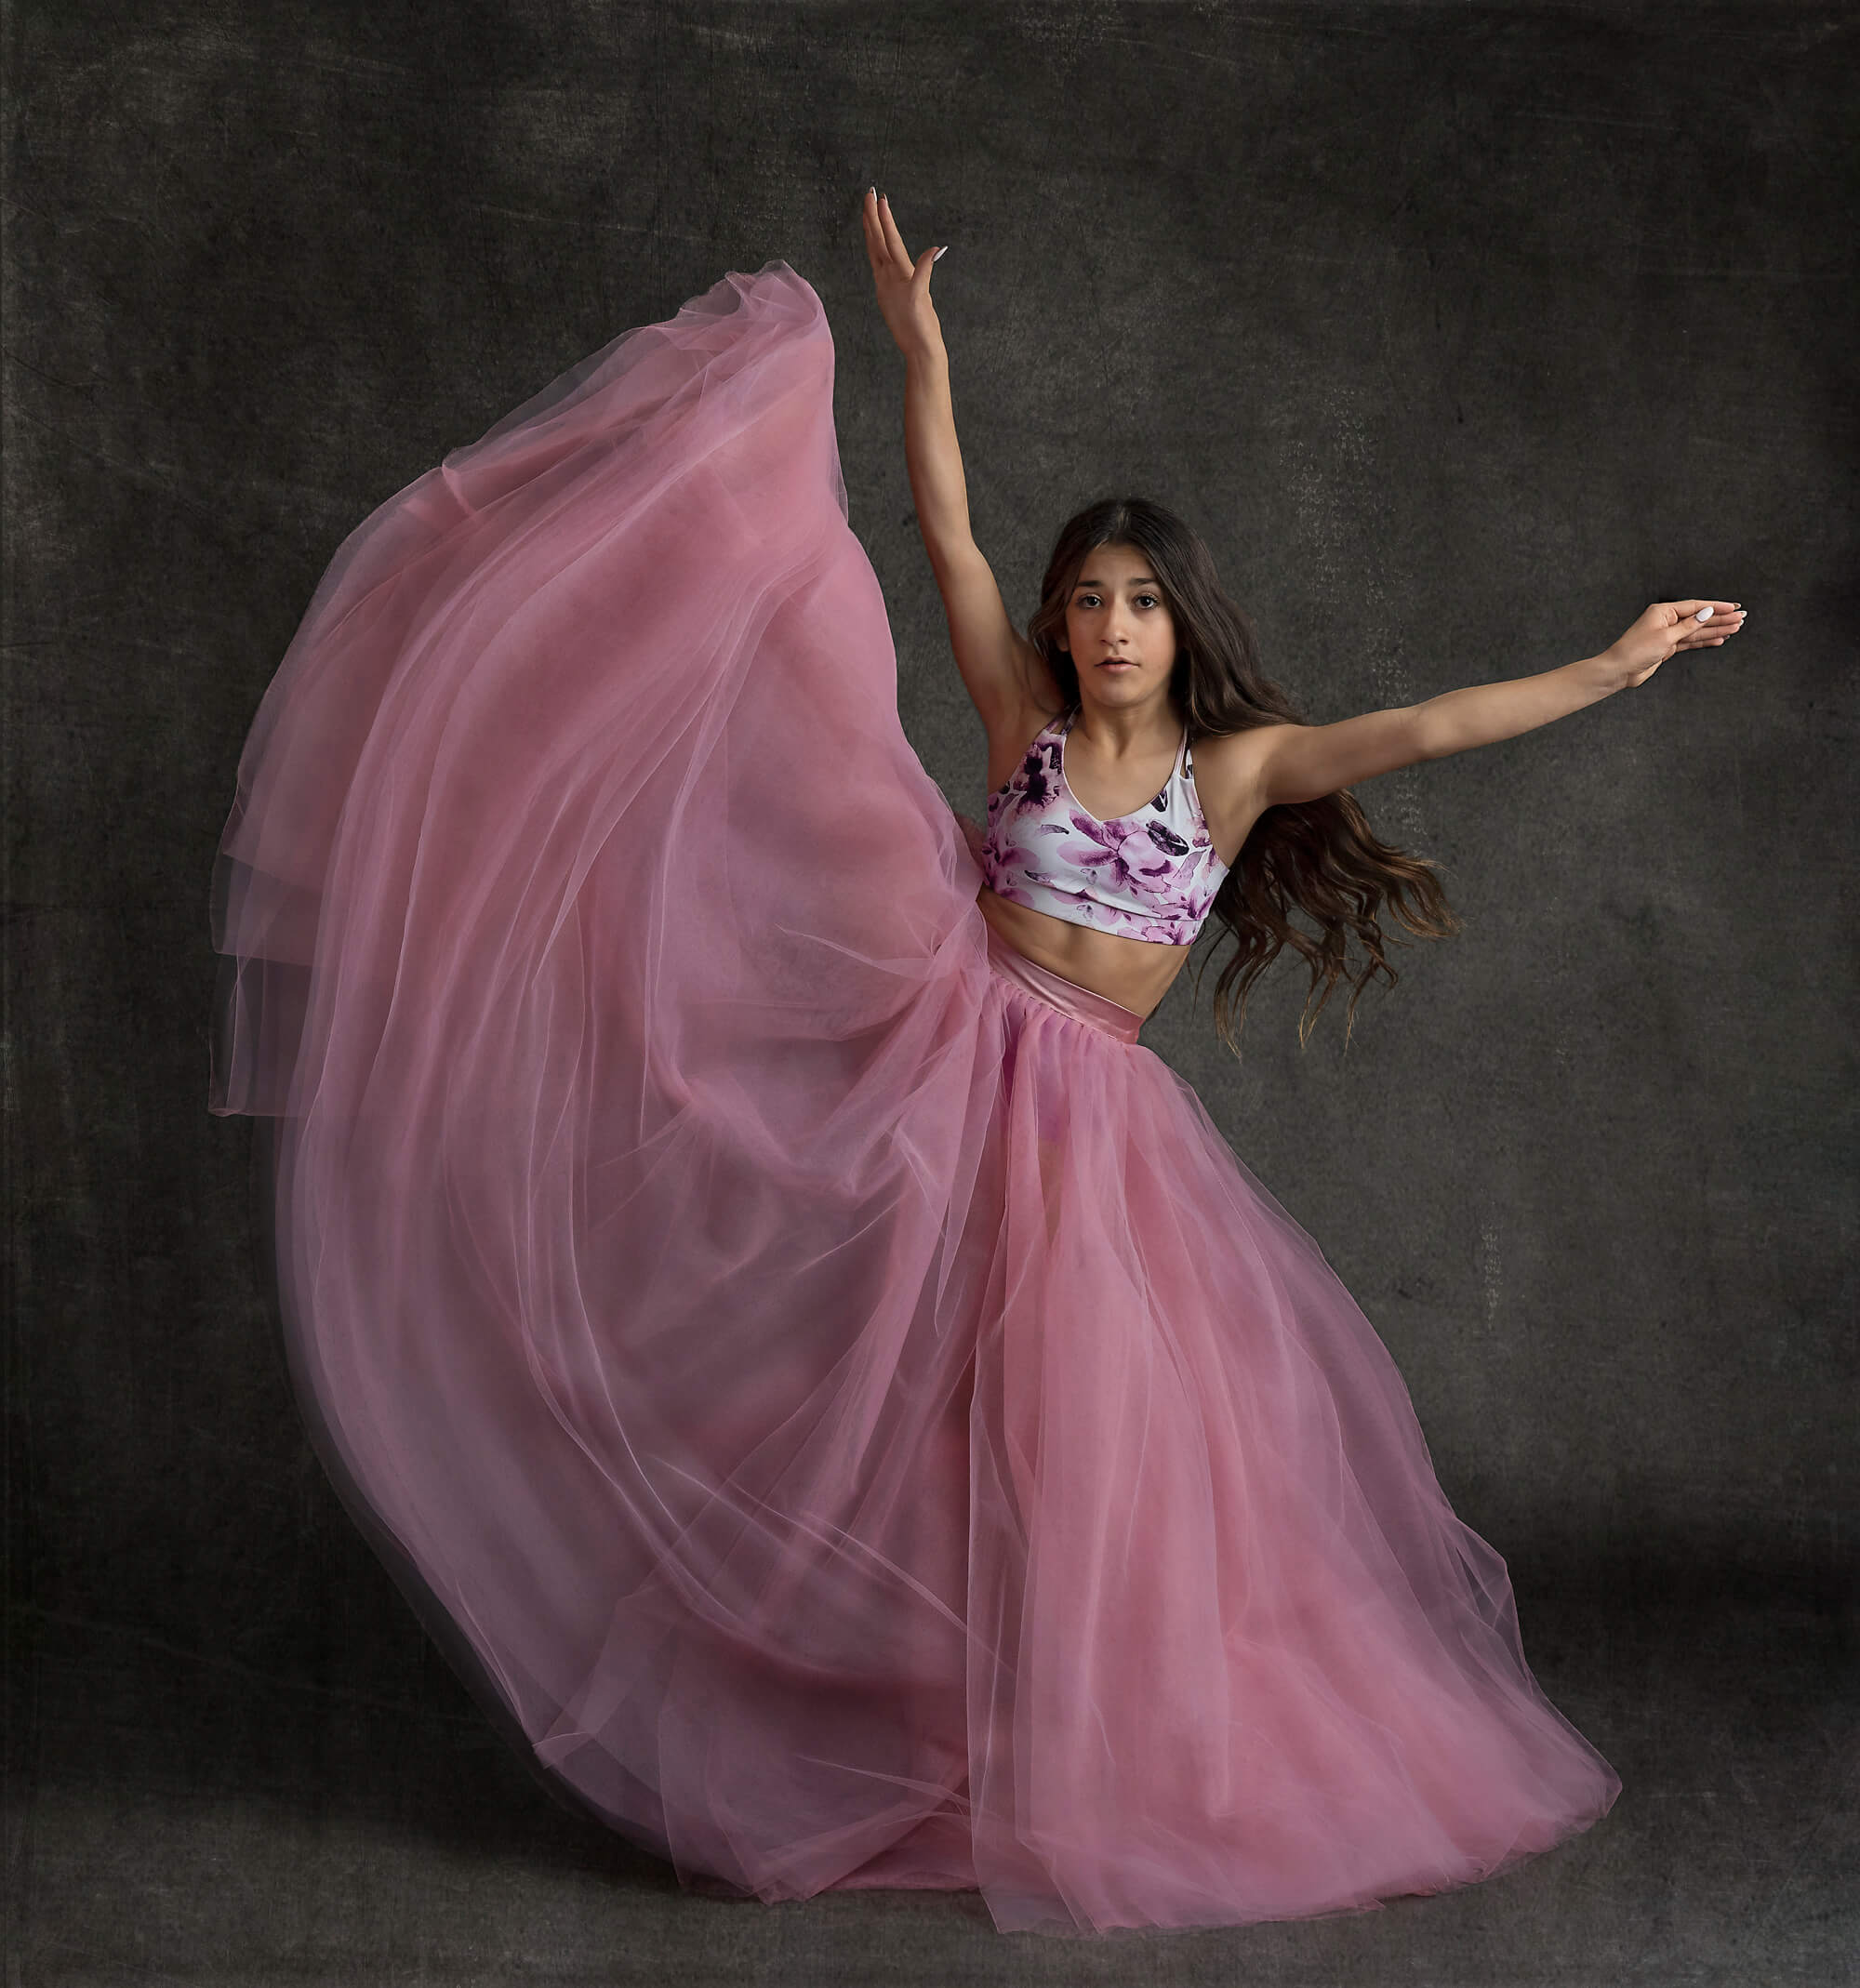 Ballerina kicking up leg in pink skirt